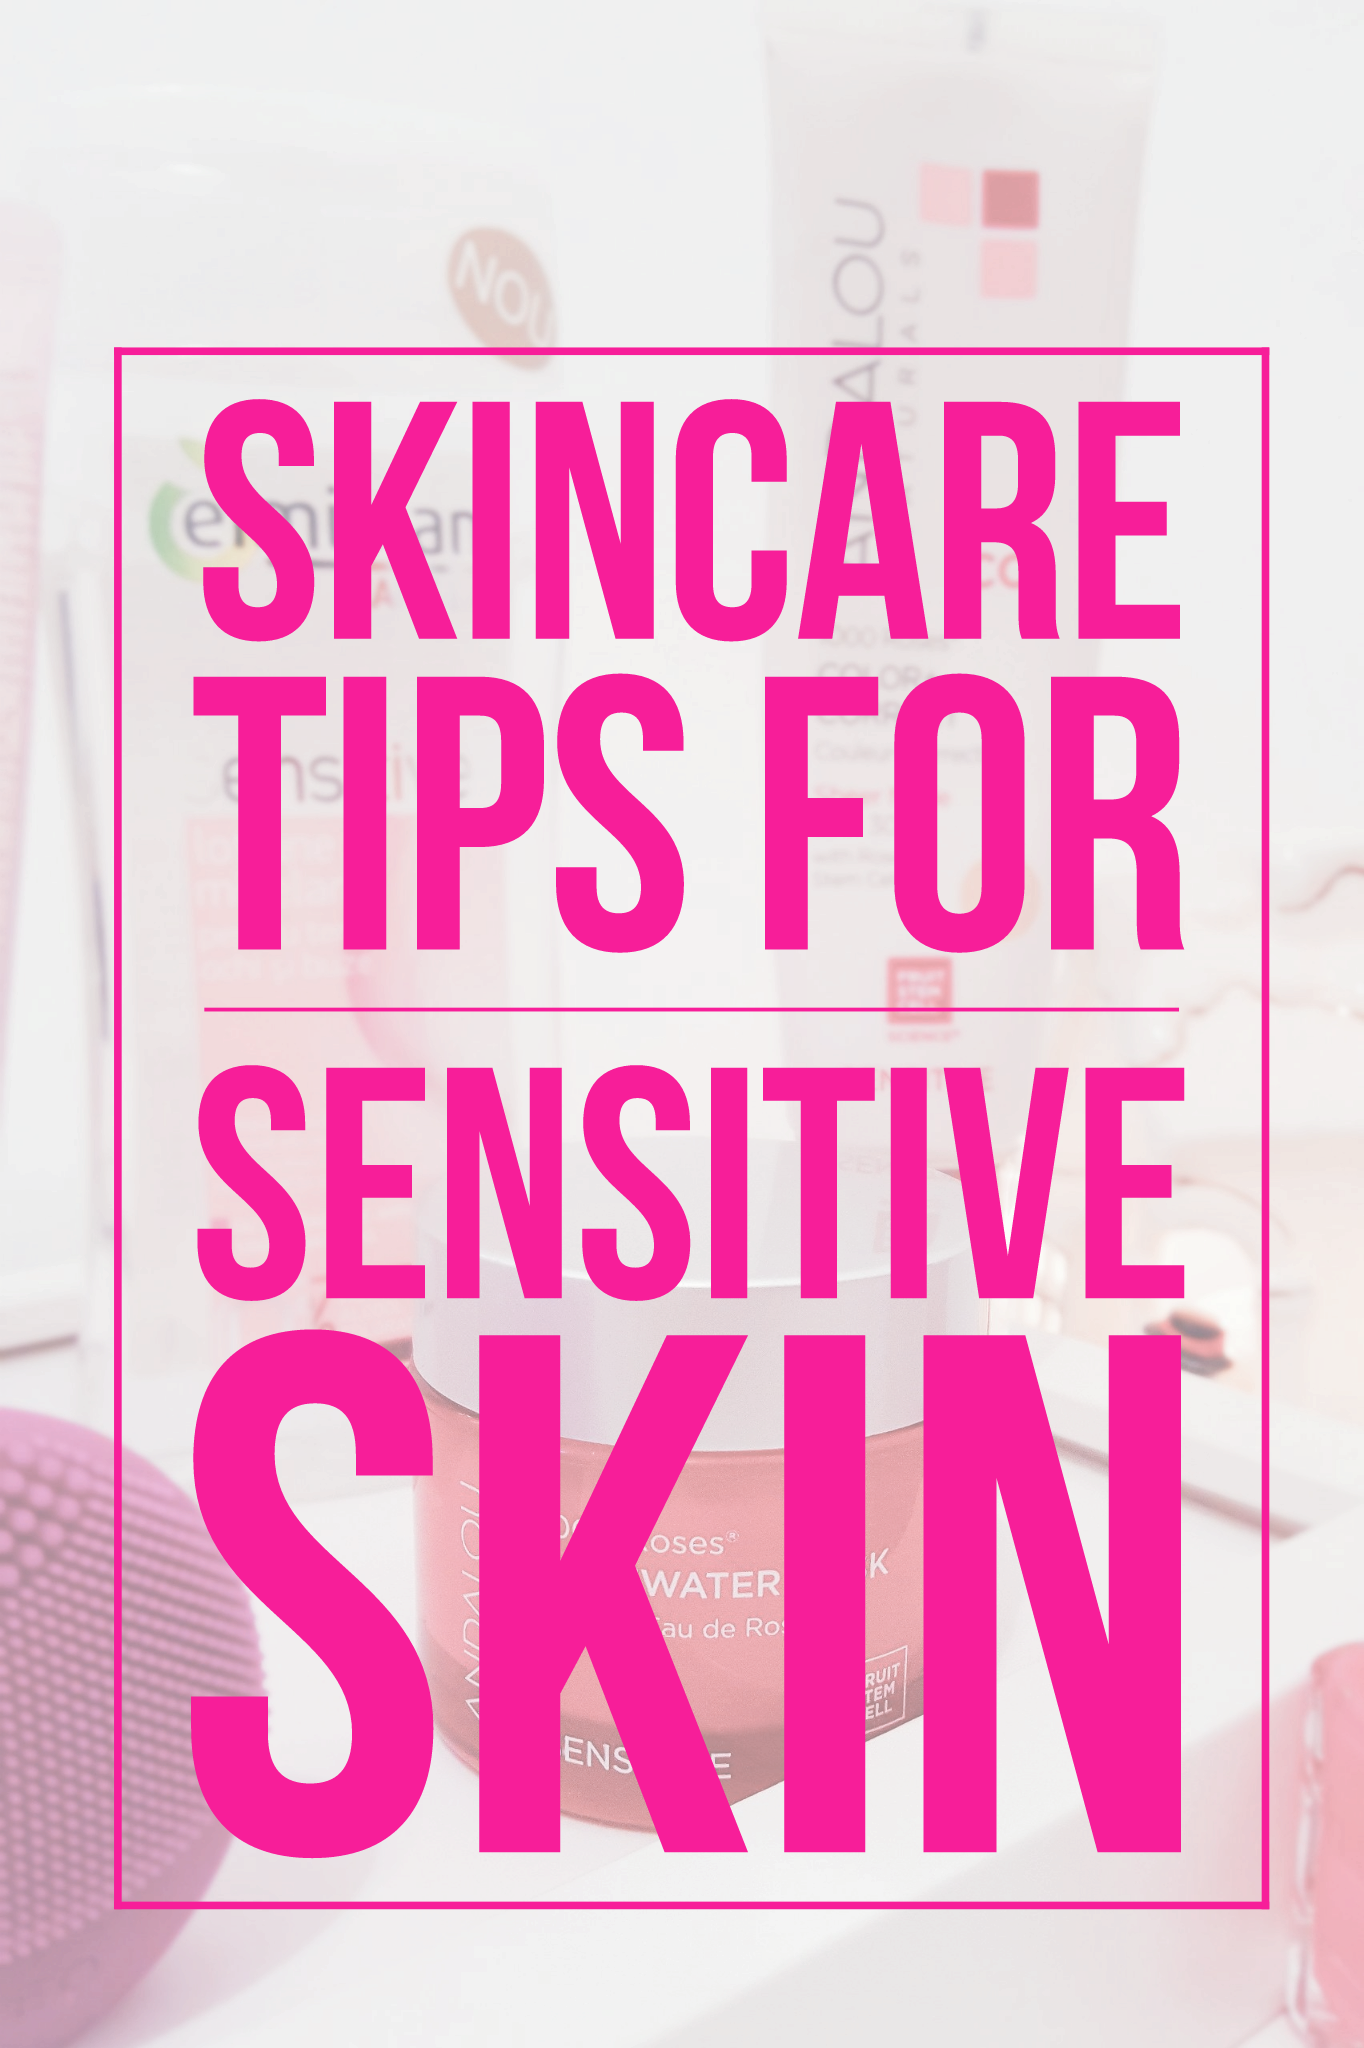 skincare tips for sensitive skin andalou naturals secom romania deboratentis.ro